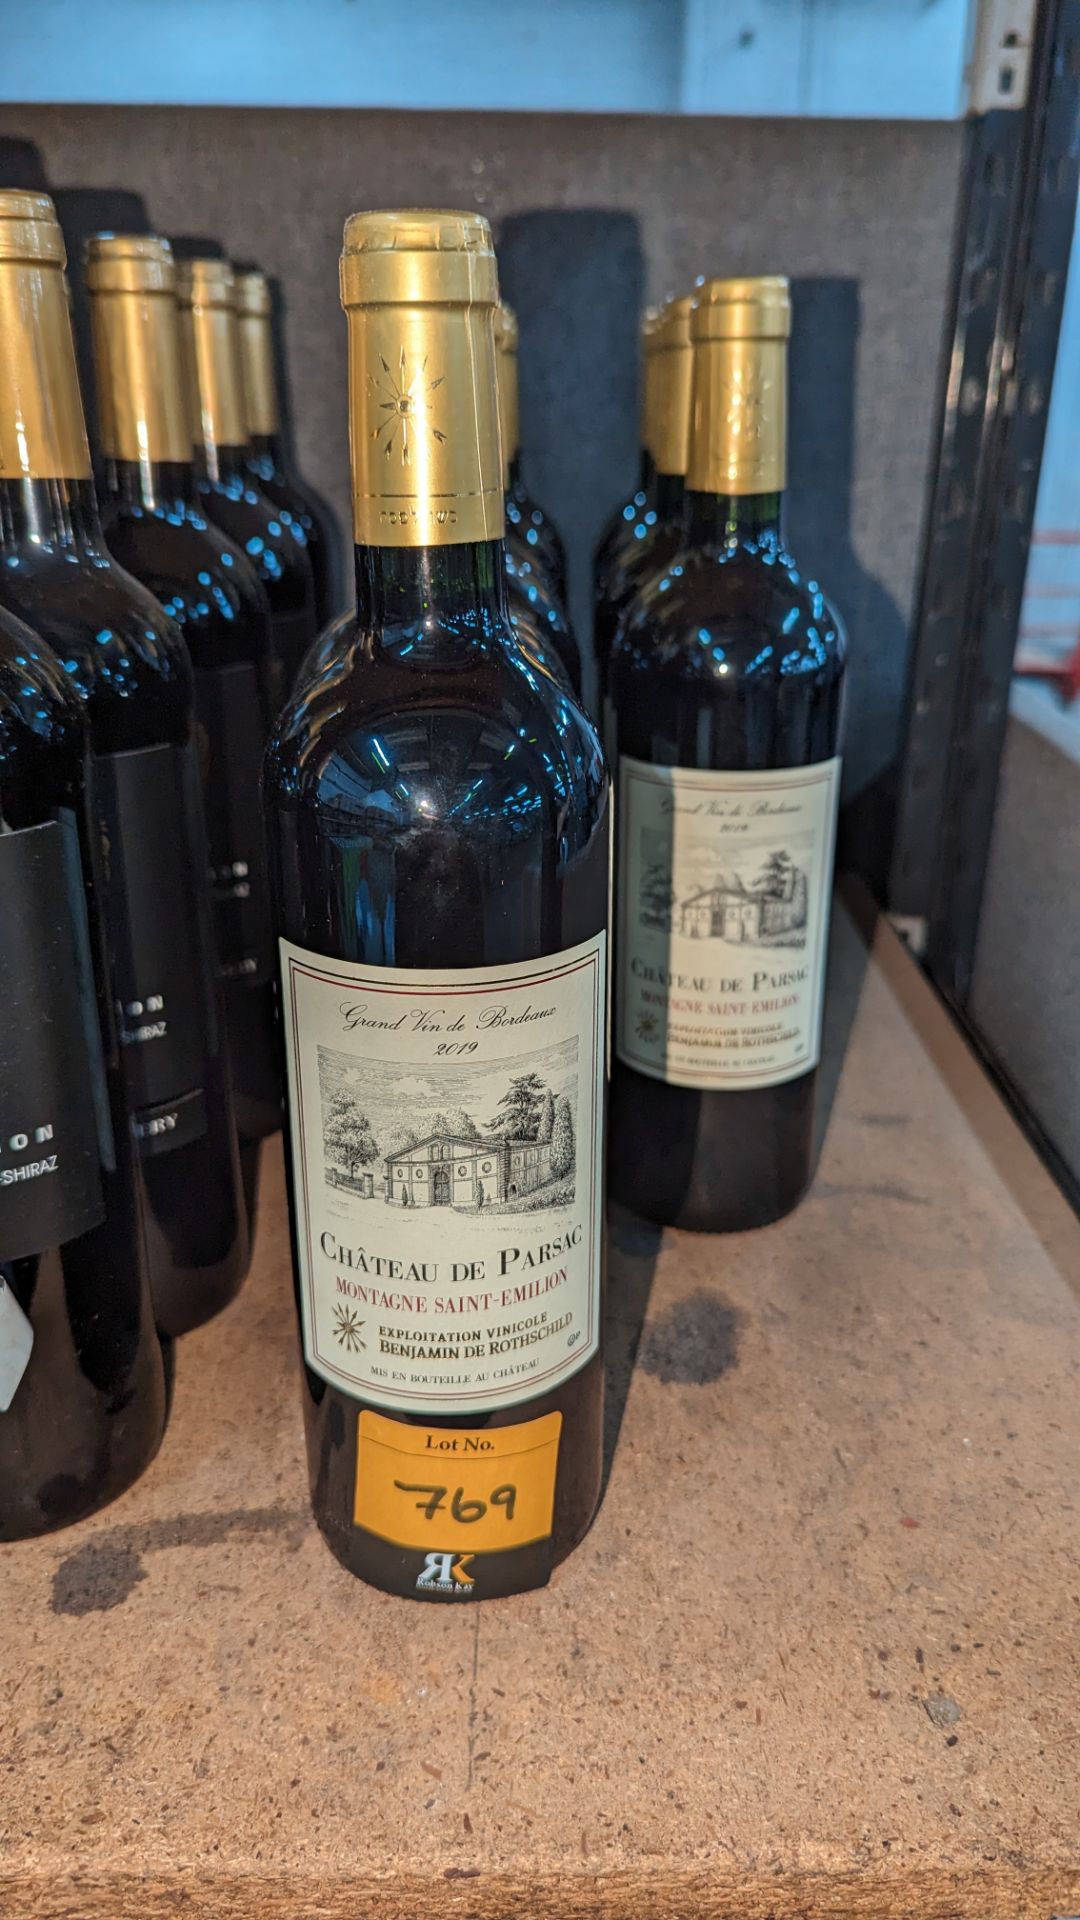 10 bottles of 2019 Chateau De Parsac Montagne Saint-Emilion French (Bordeaux) red wine sold under AW